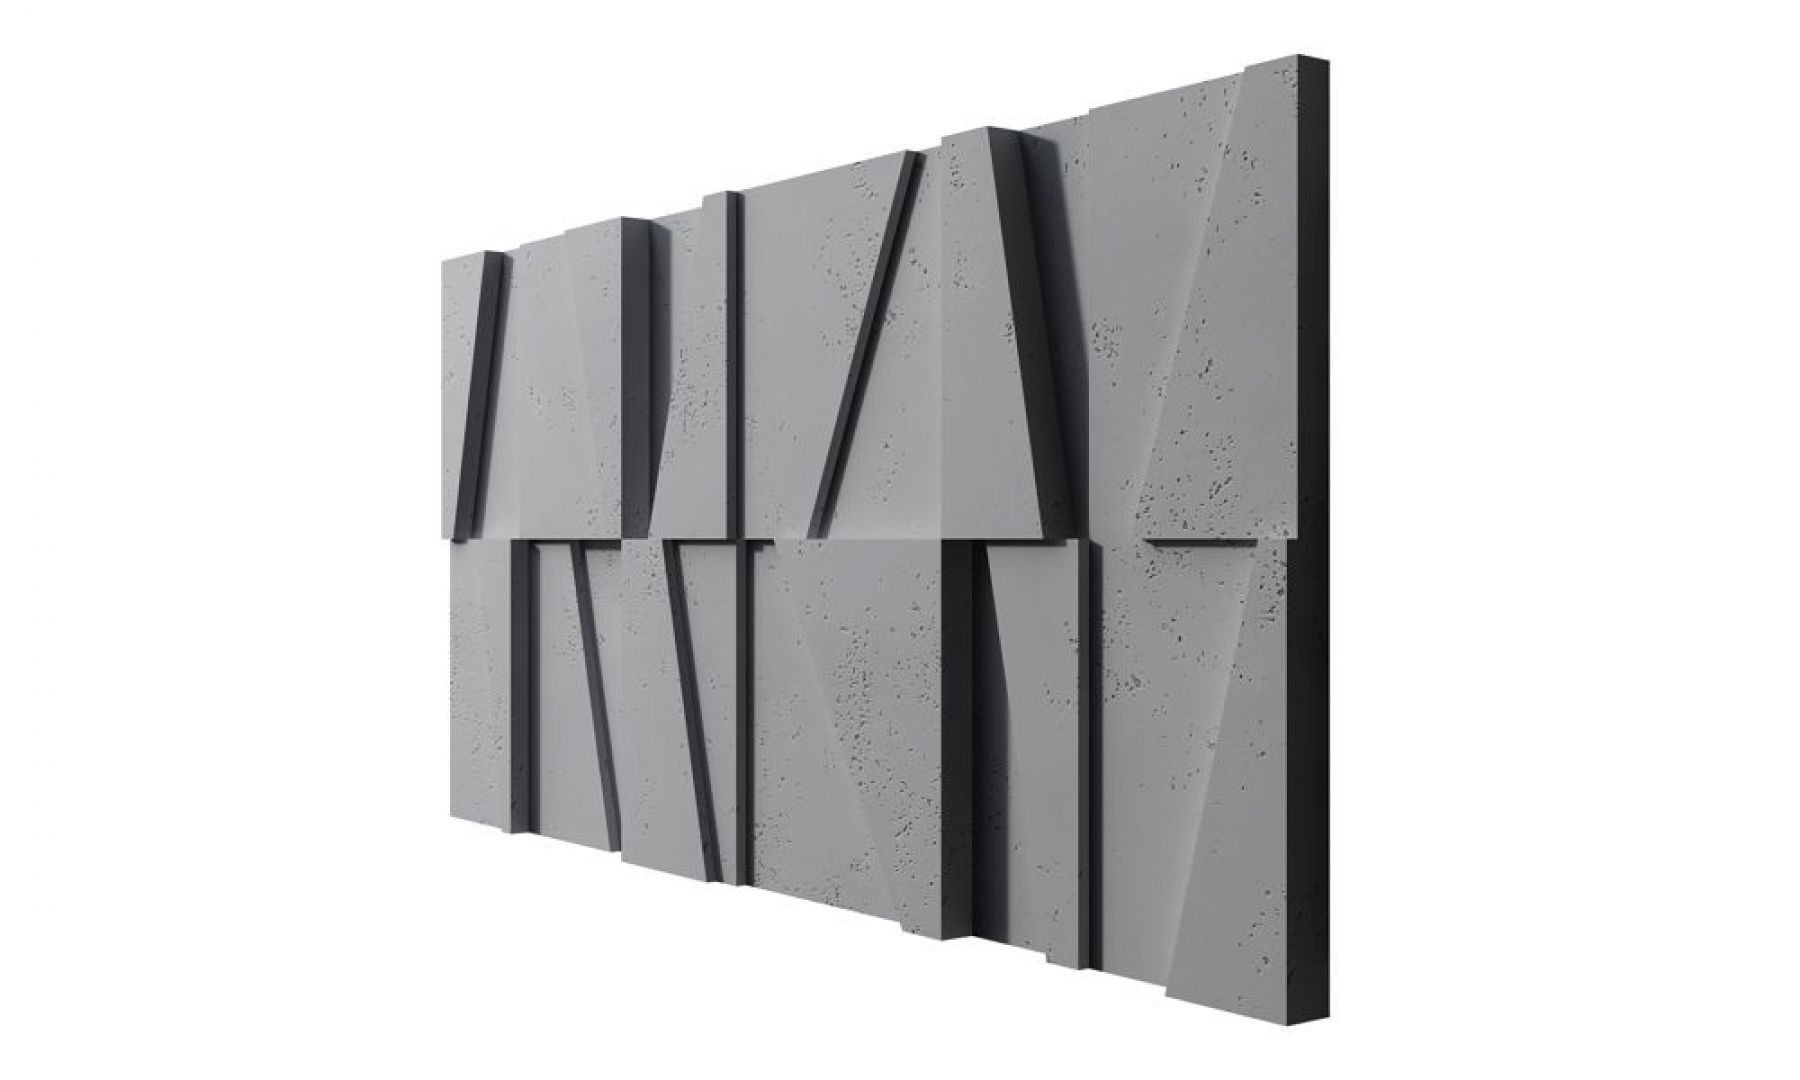 Concrete 3D Wall Panel MULTI BOOKCASE - 3D Concrete Panels | DecorMania